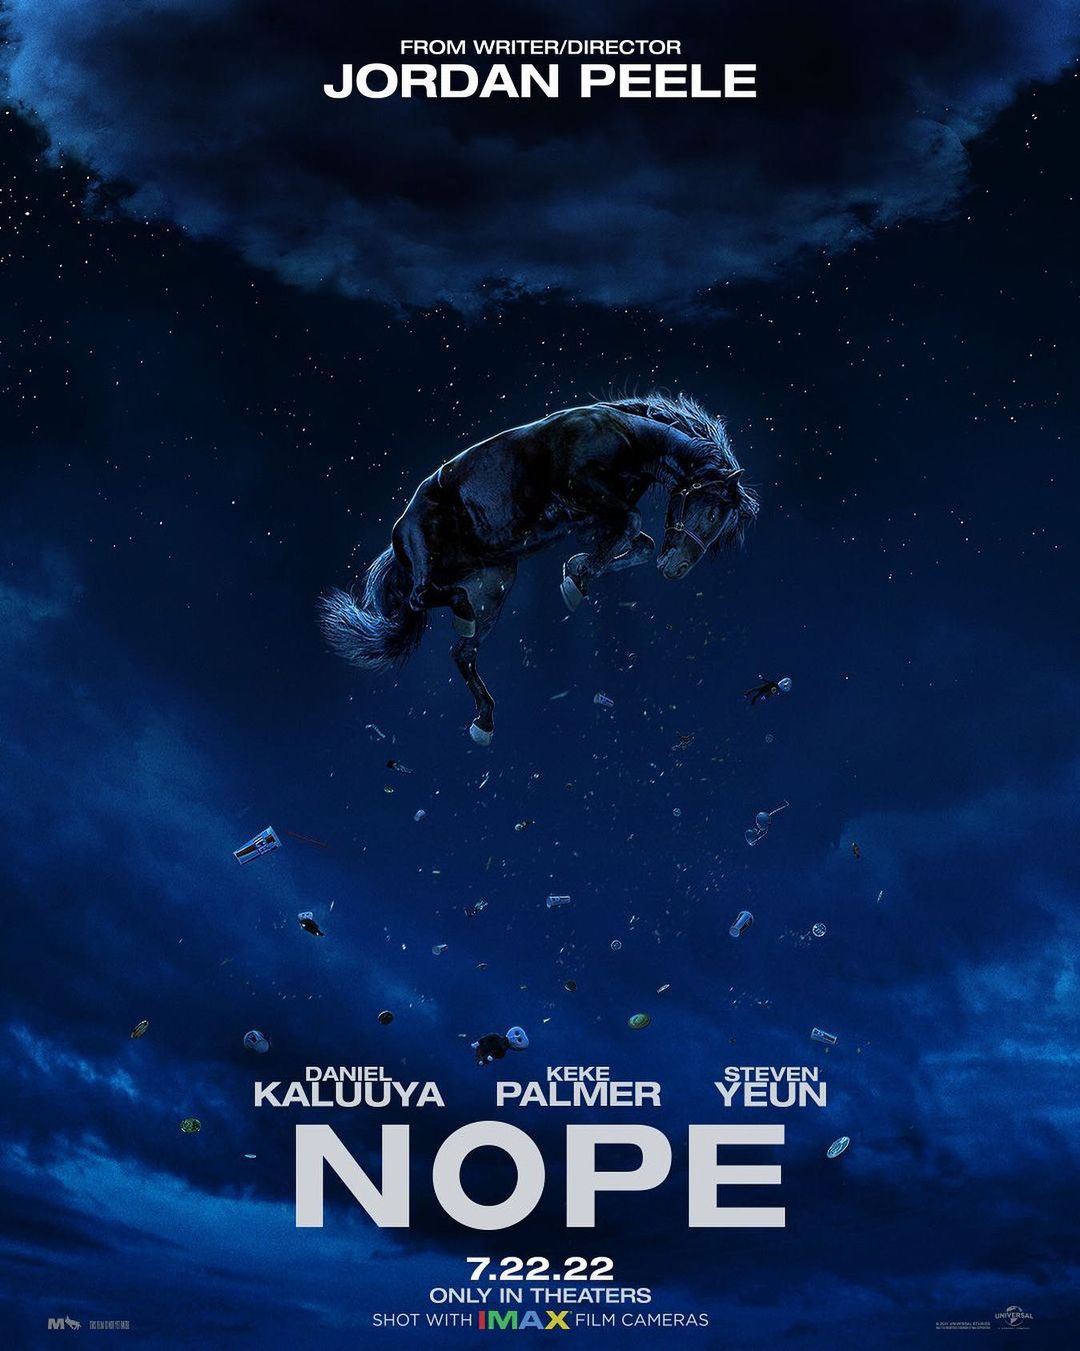 Nope (2022 film)